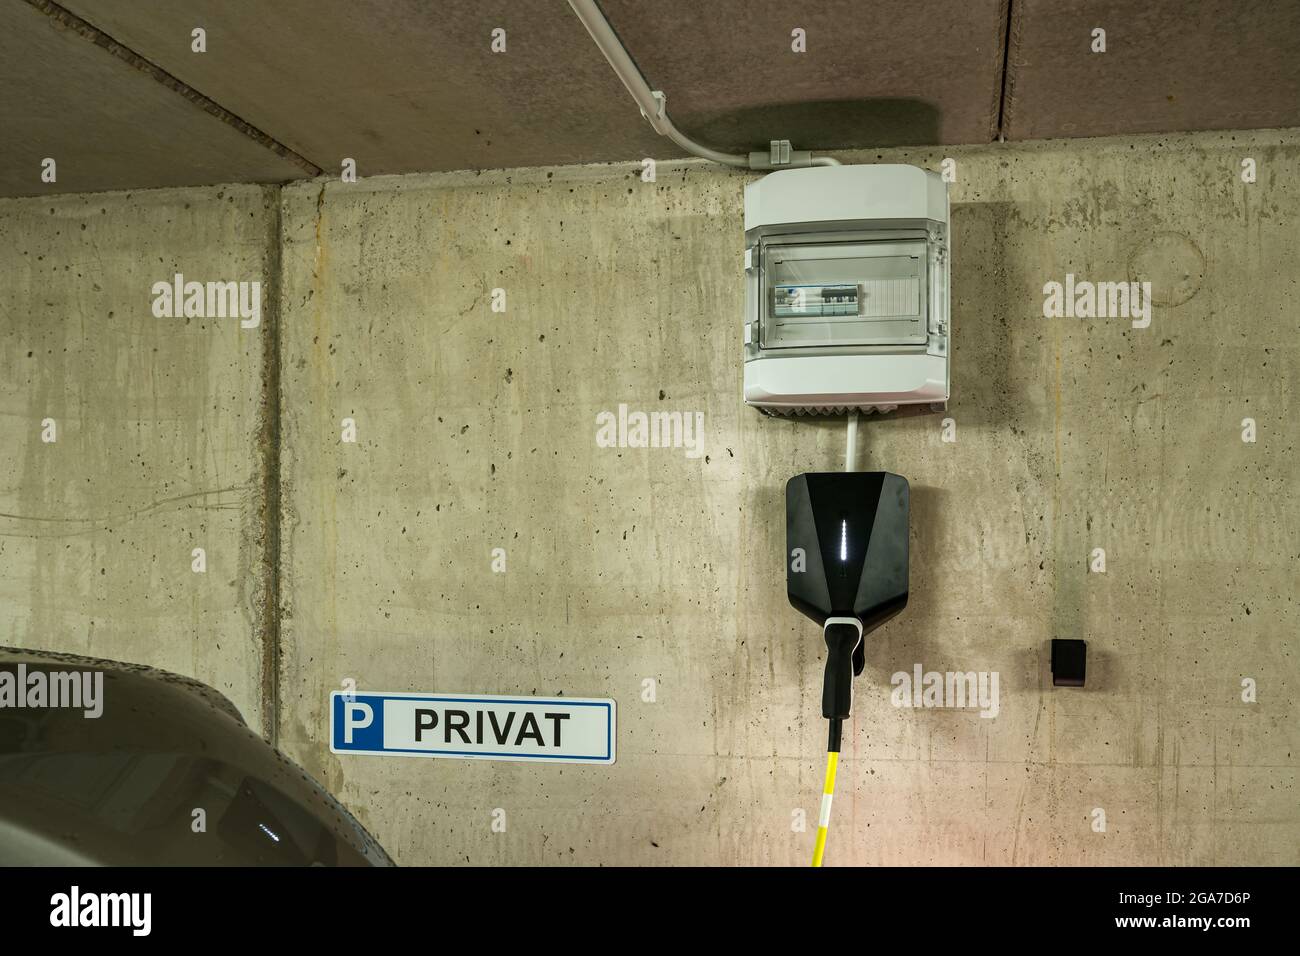 Eine installierte Wallbox, eine Ladestation für Elektroautos mit dem  kombinierten Sicherungskasten, um die Kontrolle über die Risiken des  Nachladens Ihres Elektroautos zu haben Stockfotografie - Alamy